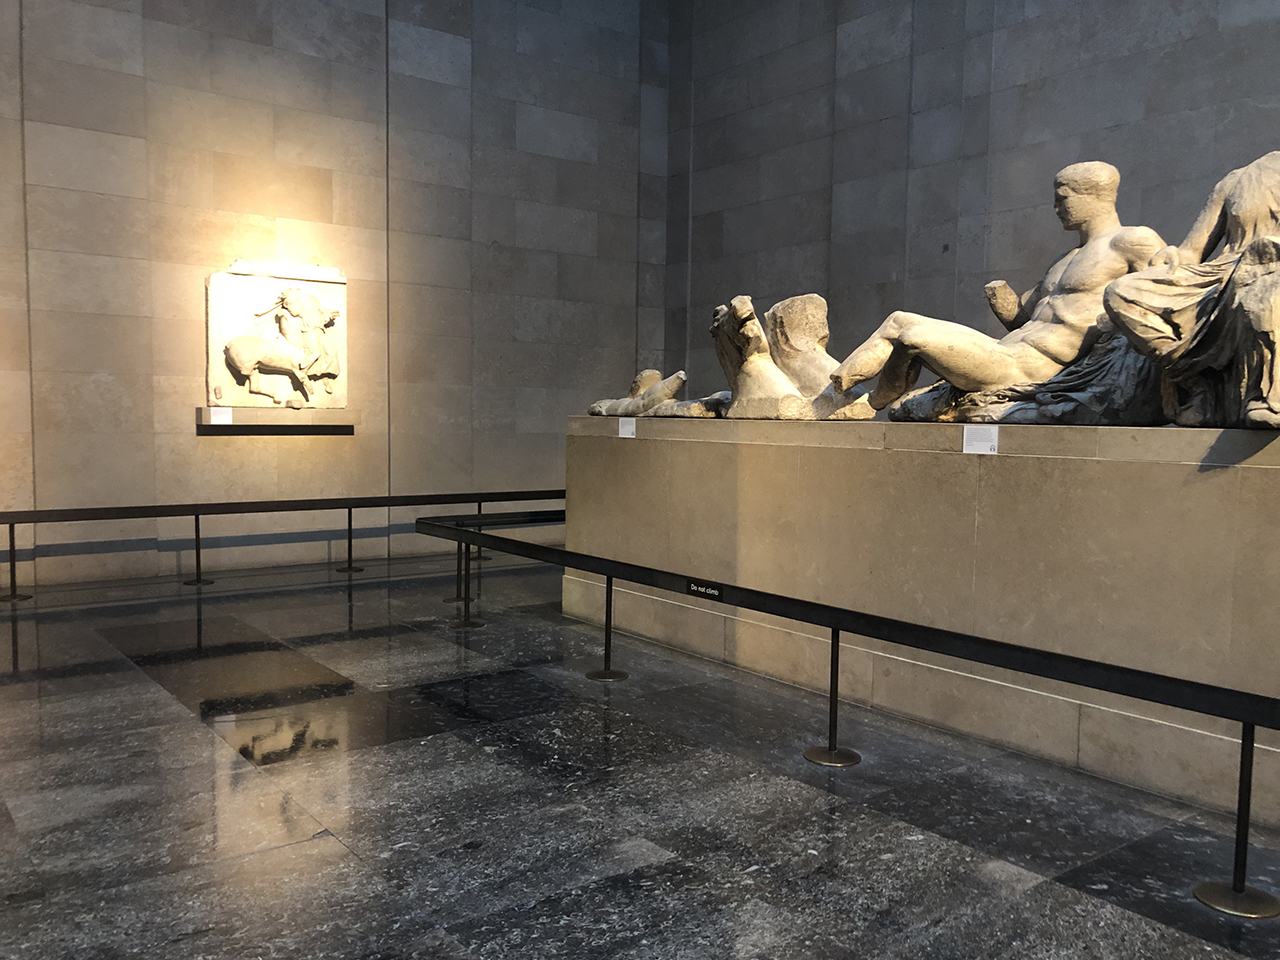 Γλυπτά του Παρθενώνα: άνοιξε ξανά η αίθουσα στο Βρετανικό Μουσείο